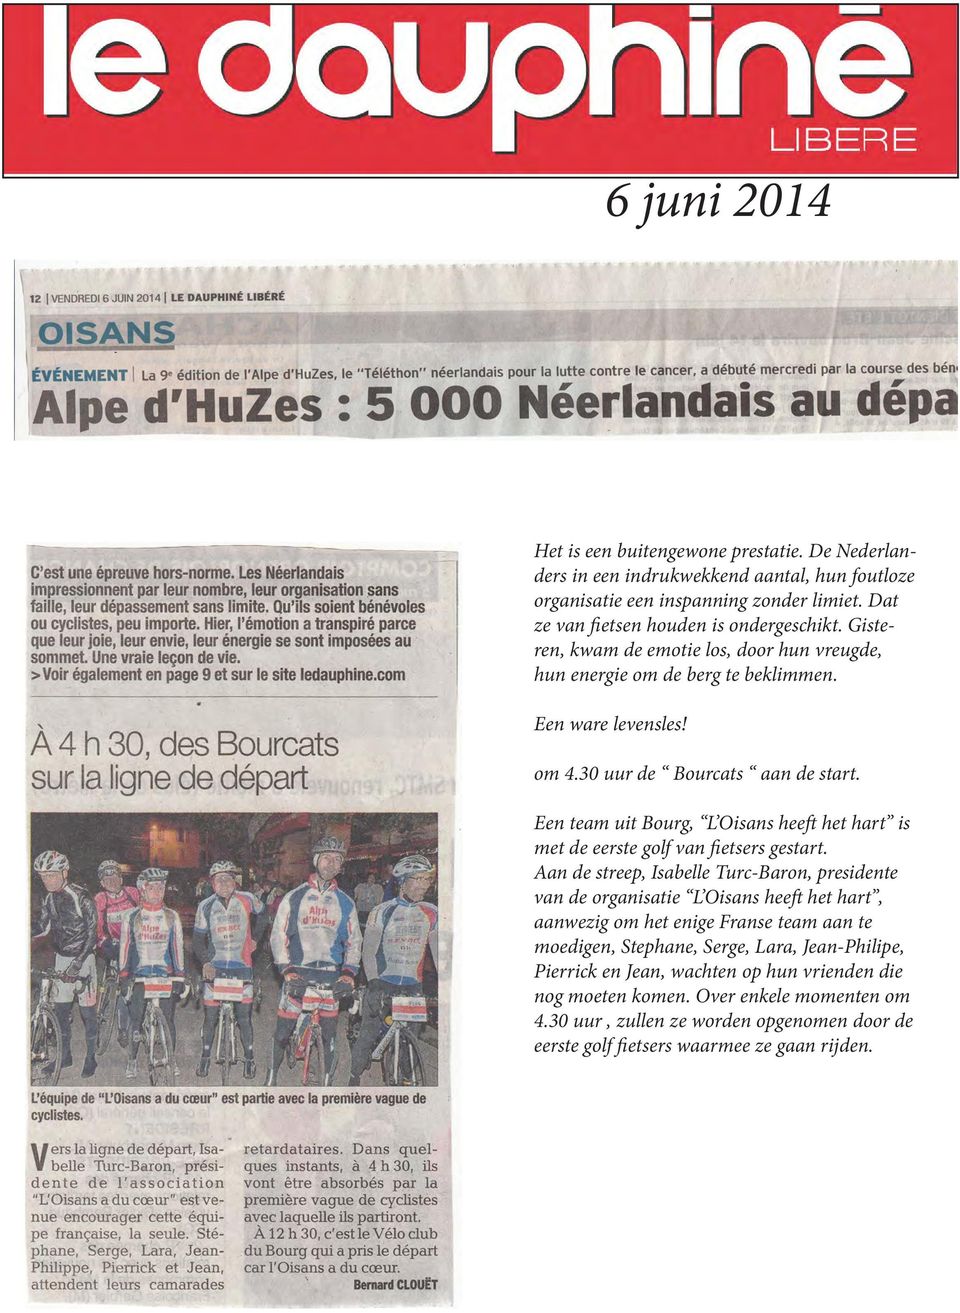 Een team uit Bourg, L Oisans heeft het hart is met de eerste golf van fietsers gestart.